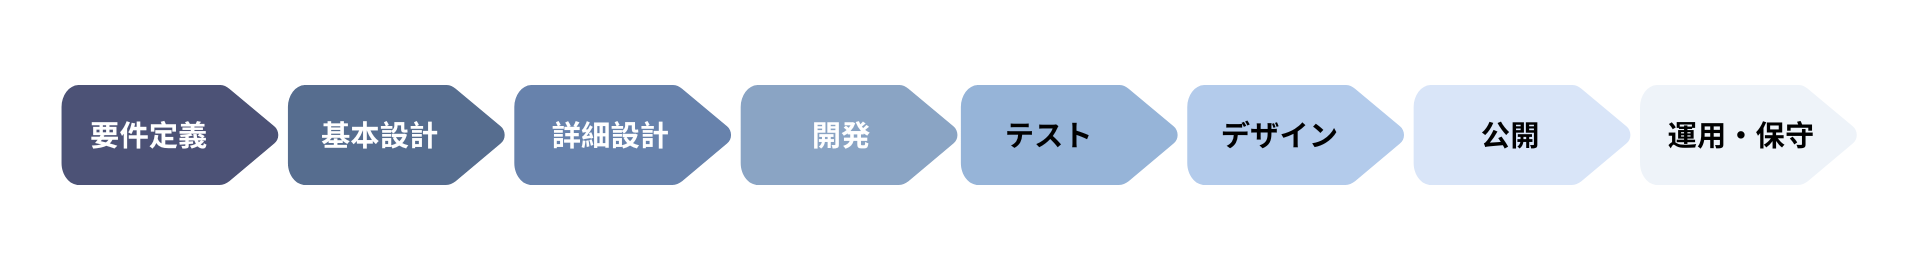 日本システム開発 のプロセス